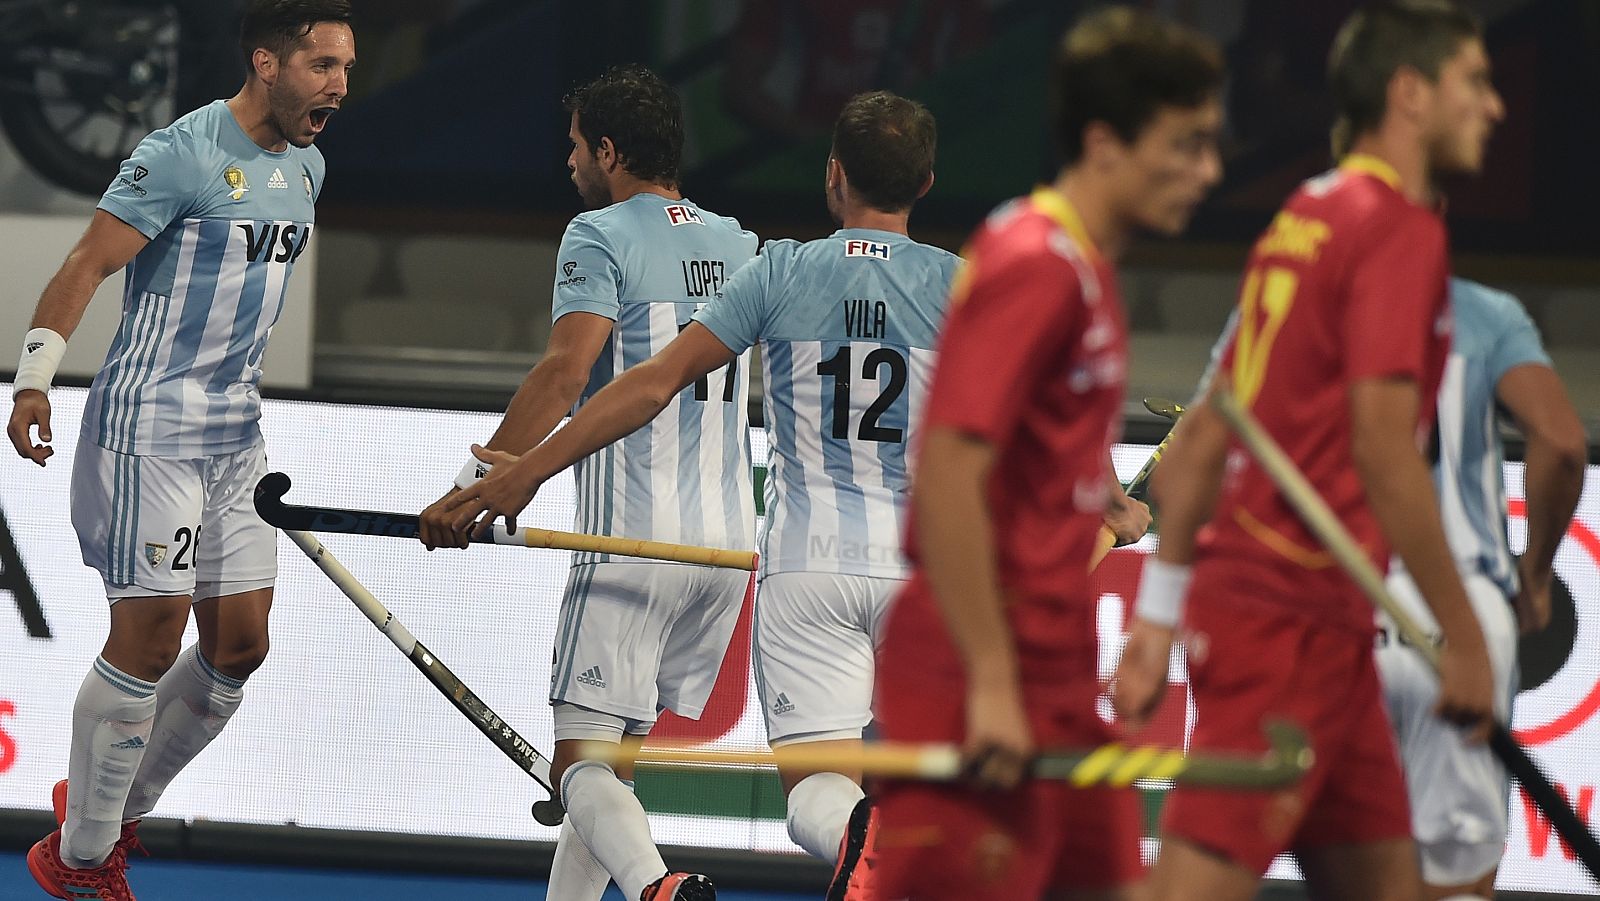 España debuta con derrota ante Argentina en el Mundial de hockey sobre hierba